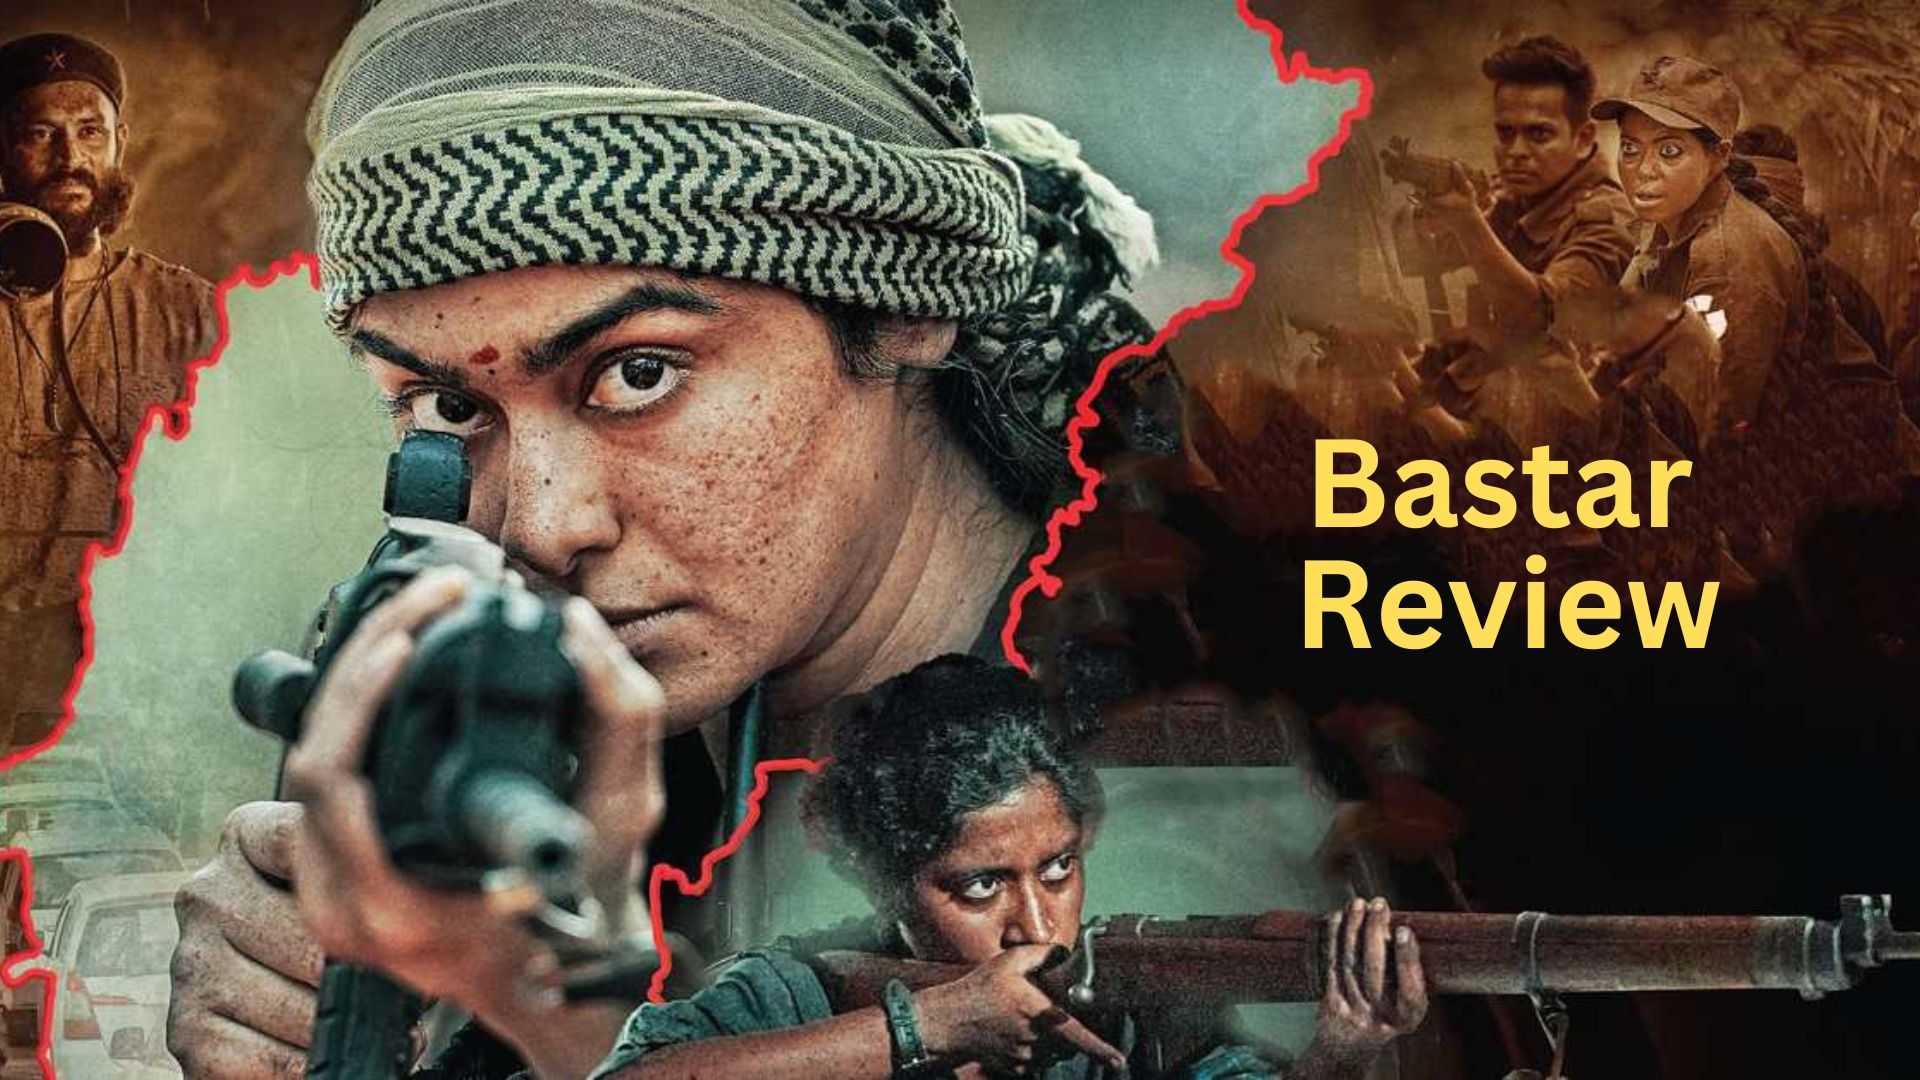 Bastar Review: काफी डिस्टर्बिंग है बस्तर मूवी, एक्शन से ज्यादा दिखाई दिए अदा शर्मा के तेवर